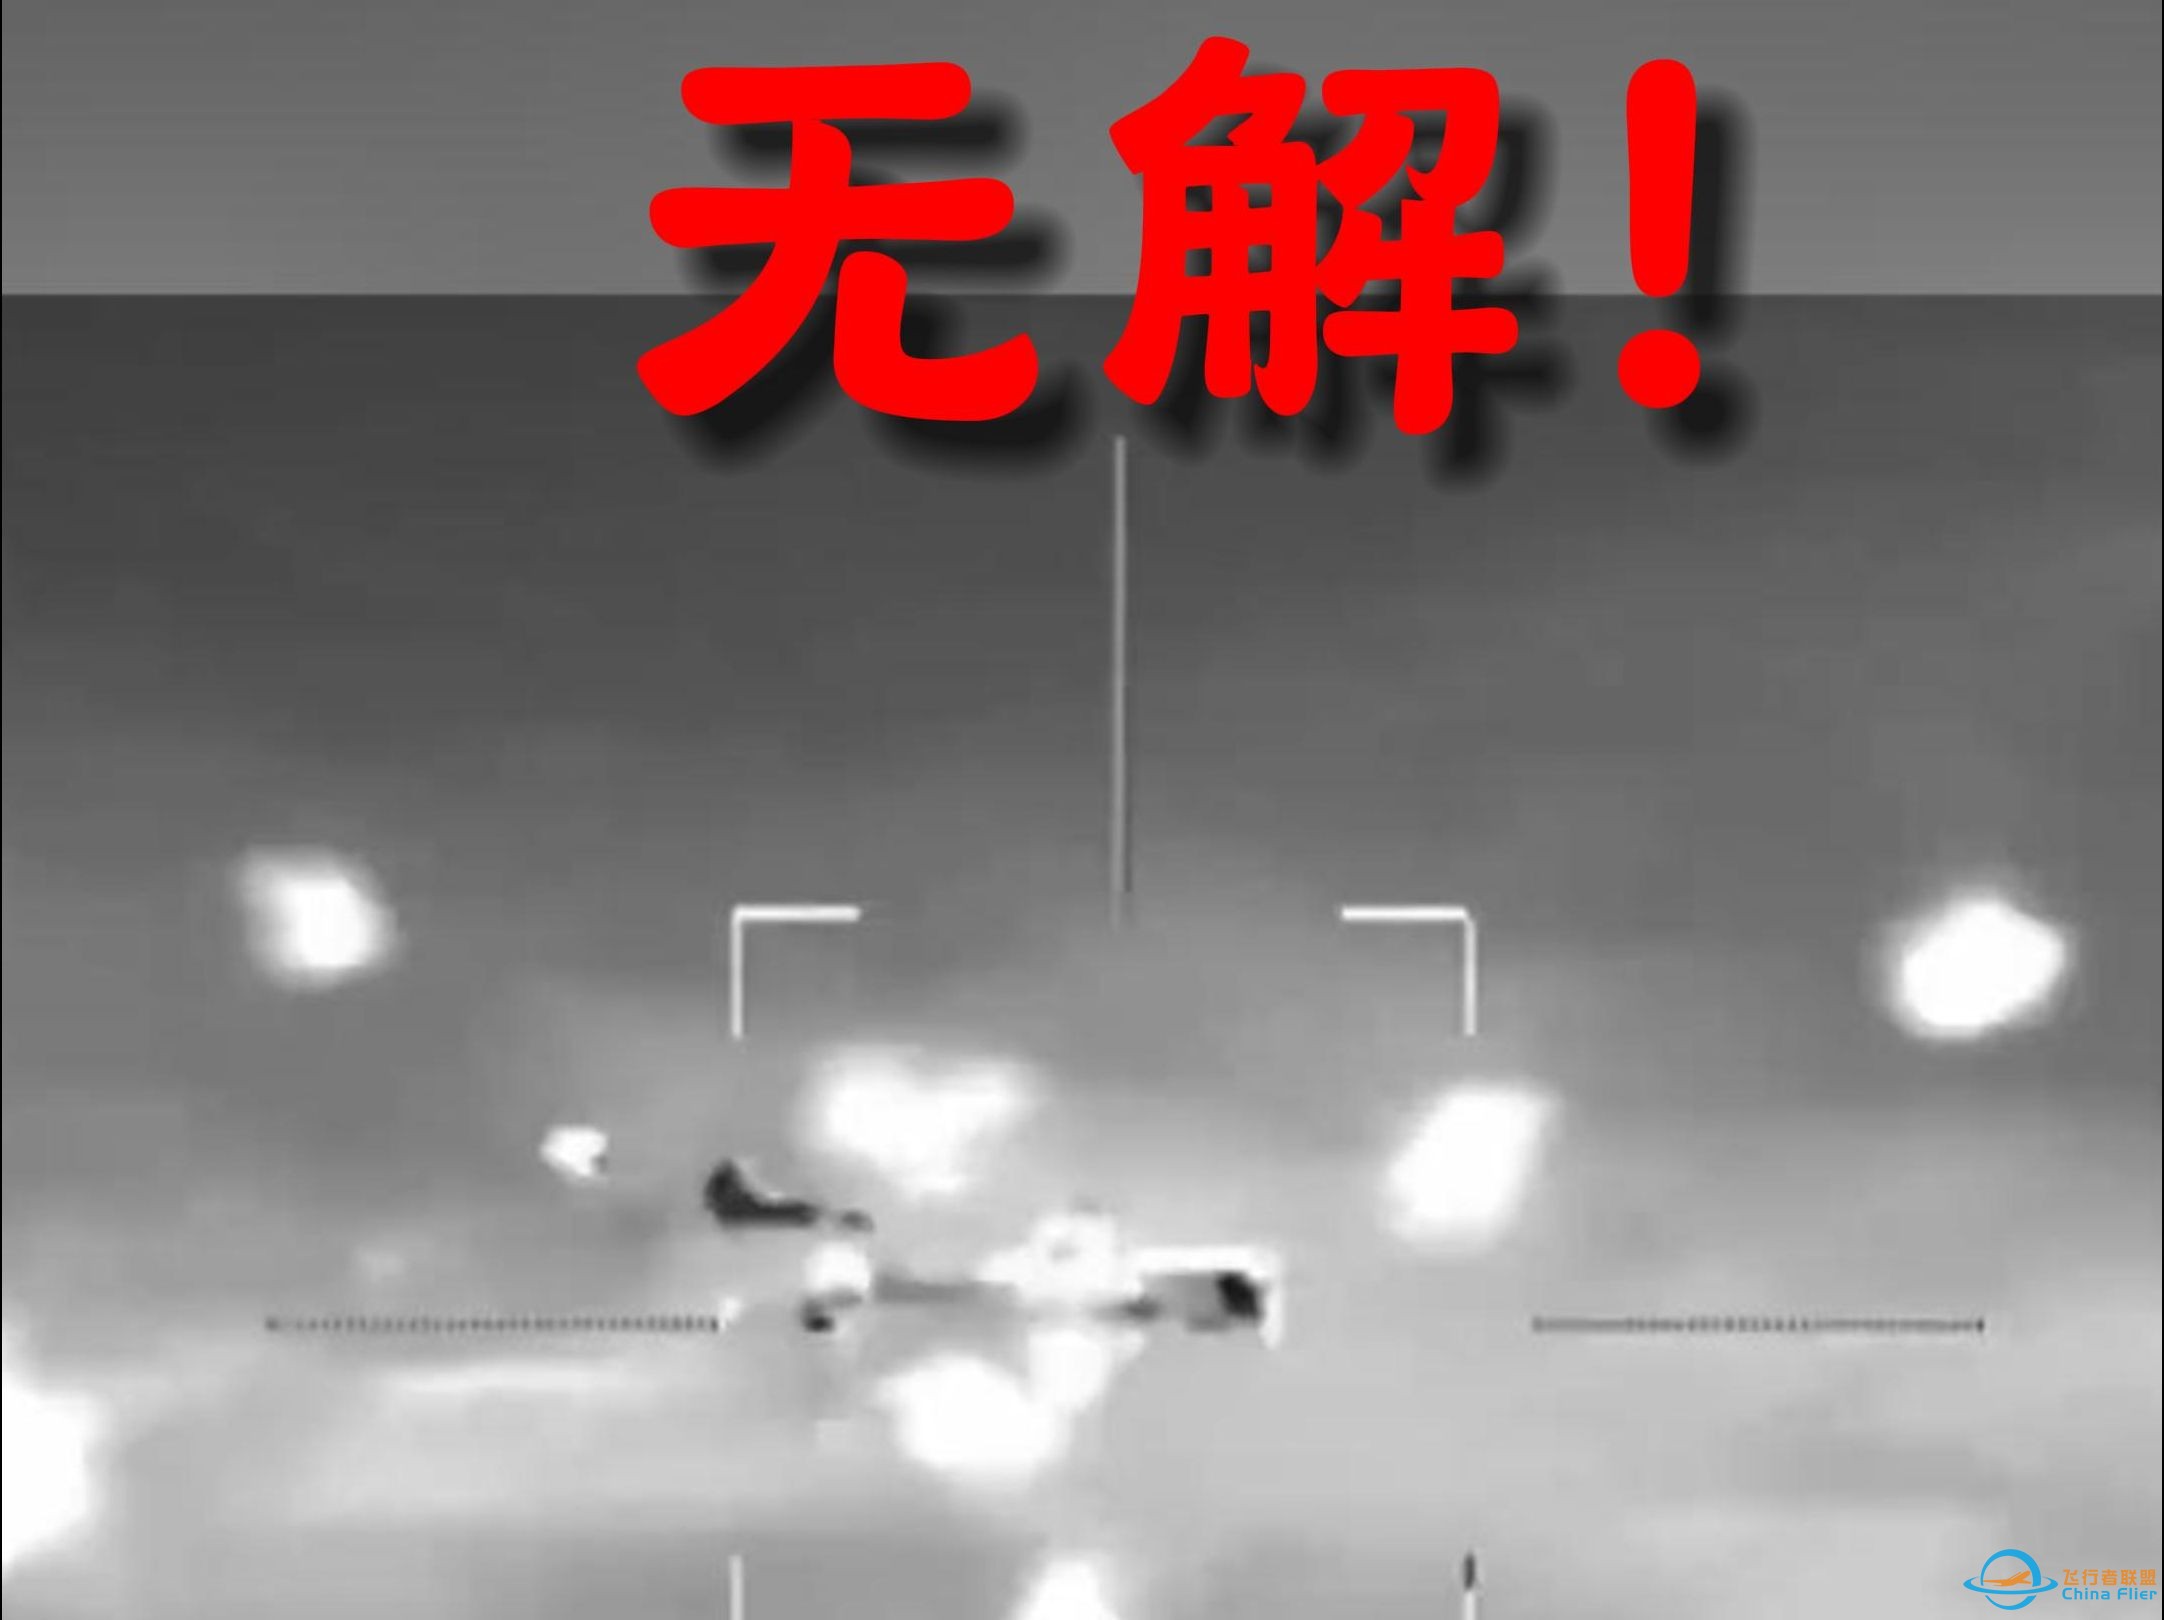 除非耗资百万 否则无法防御的中国无人机-1.jpg